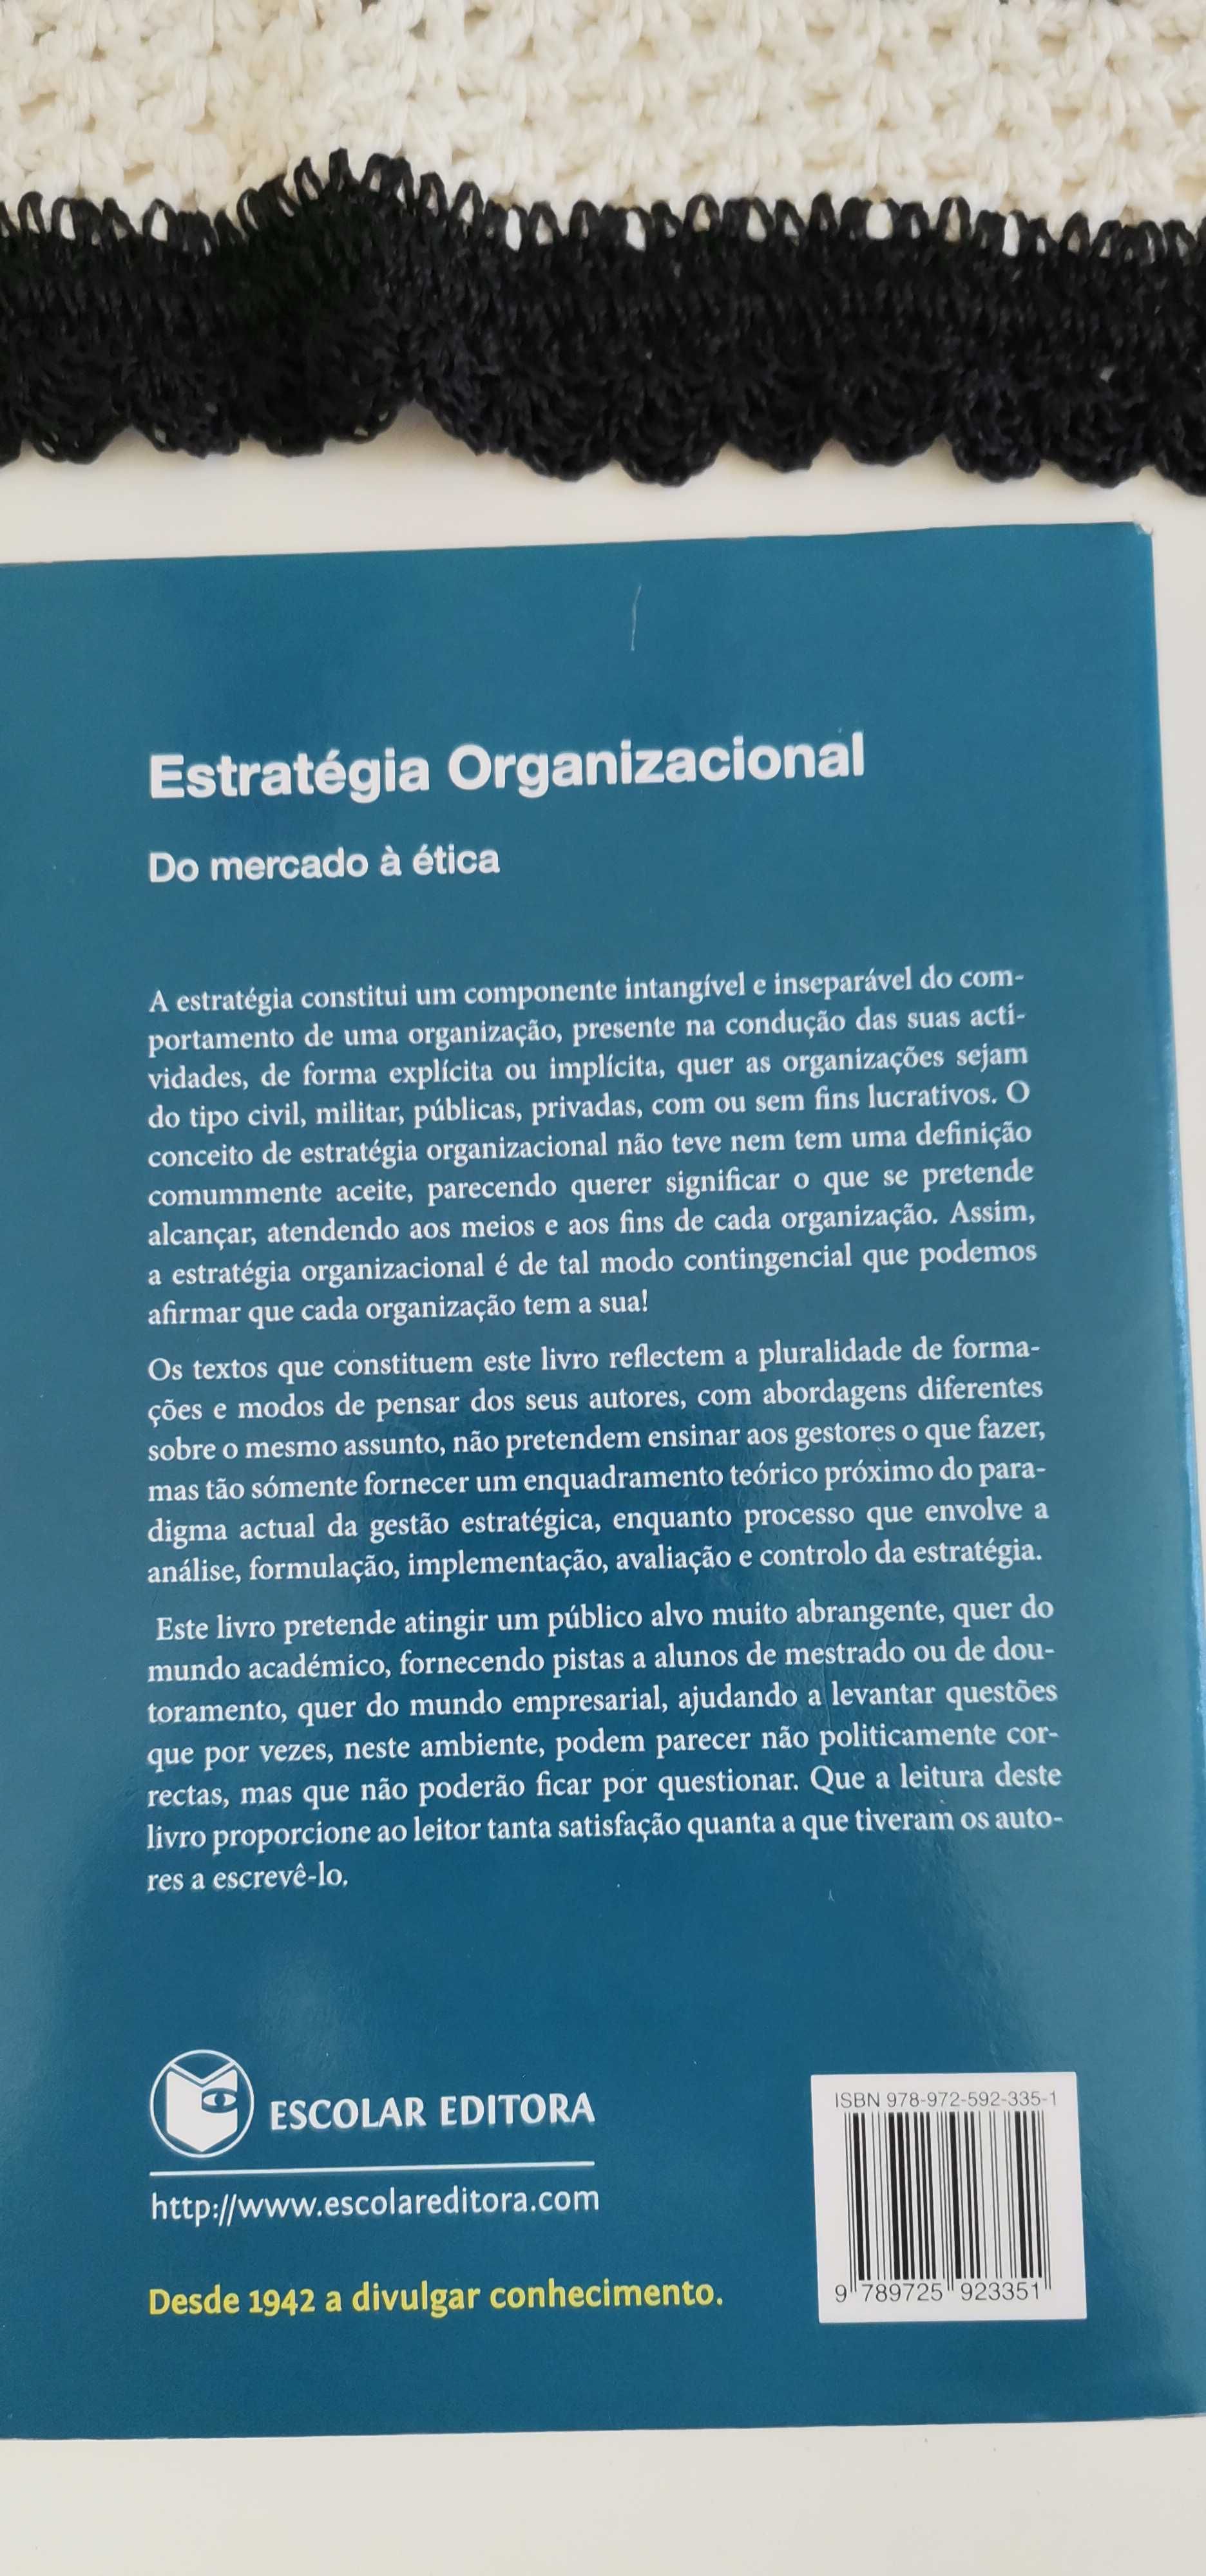 Estratégia Organizacional - Do mercado à ética
Jorge Rodrigues